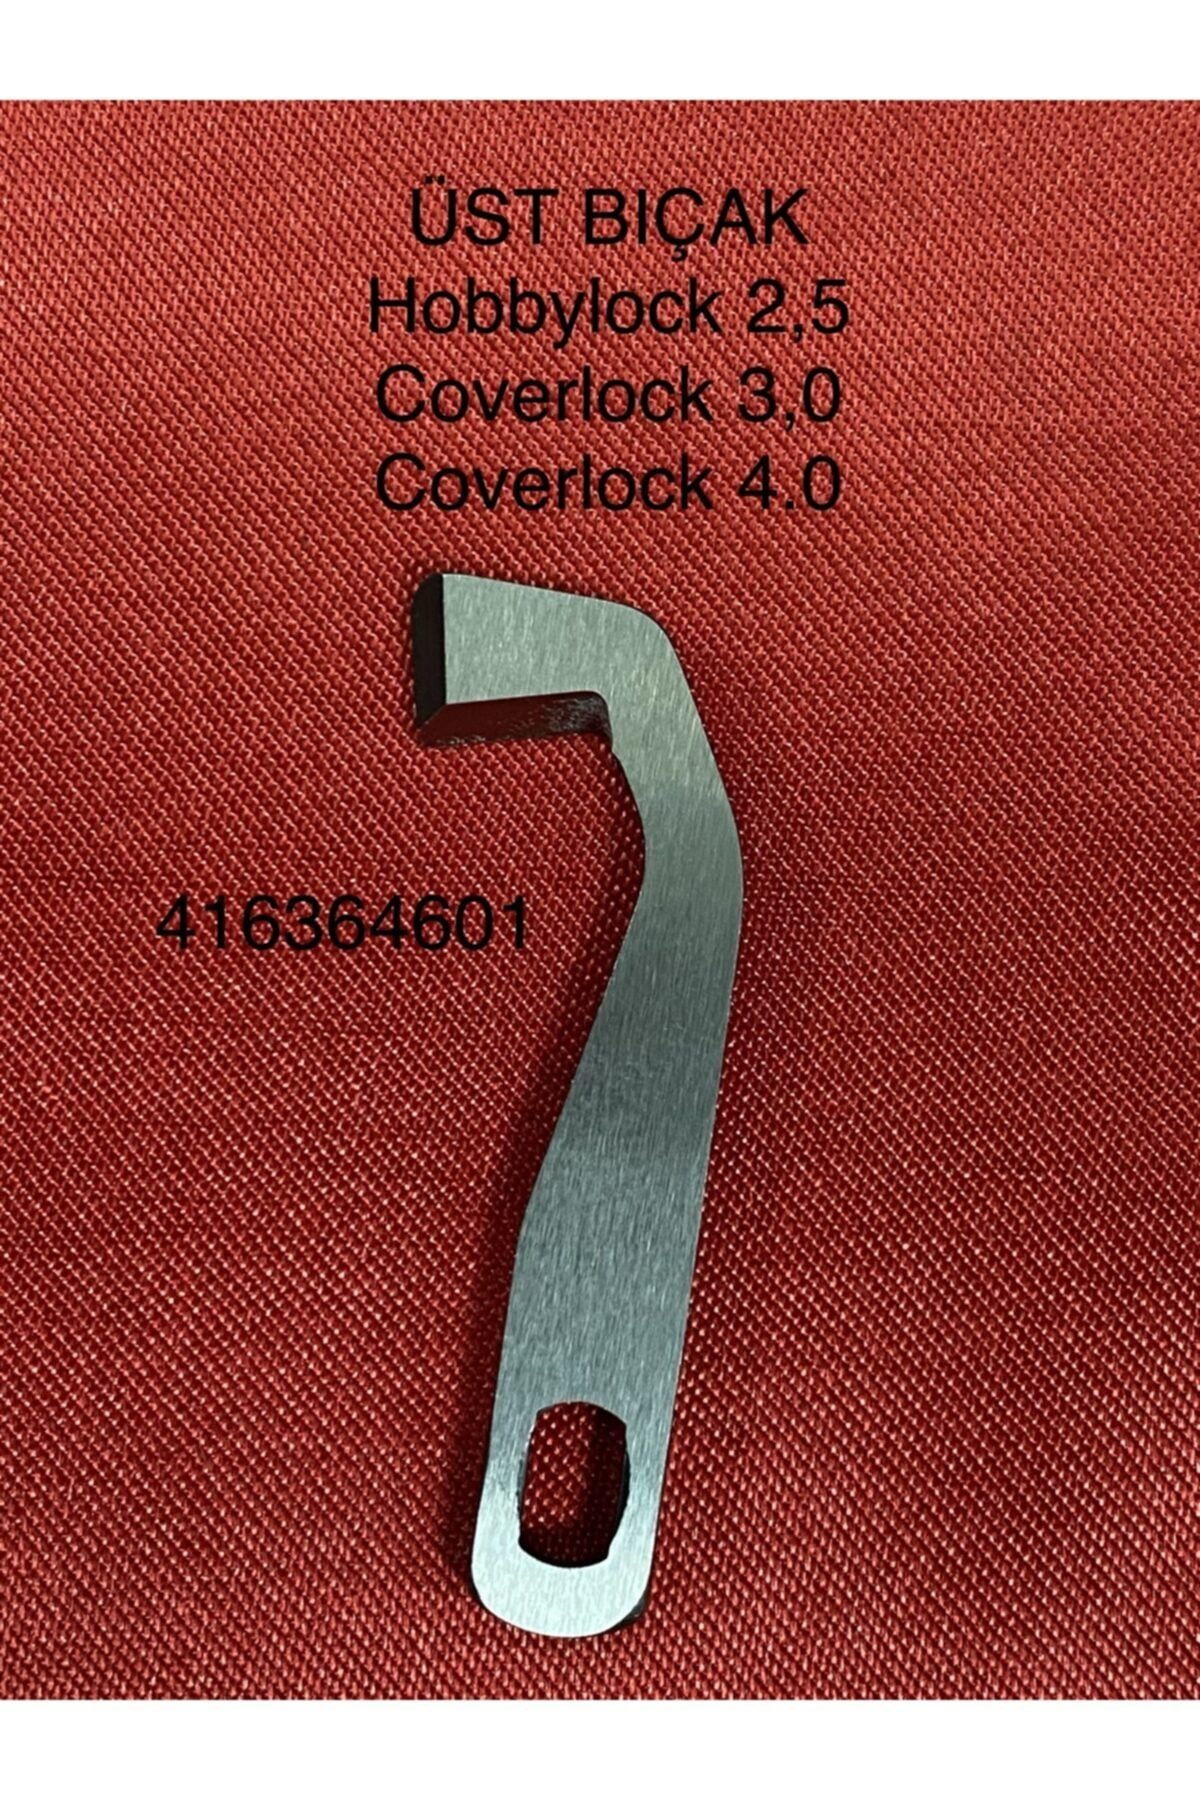 Pfaff Overlok Ve Coverlock Üst Bıçak - 416364601